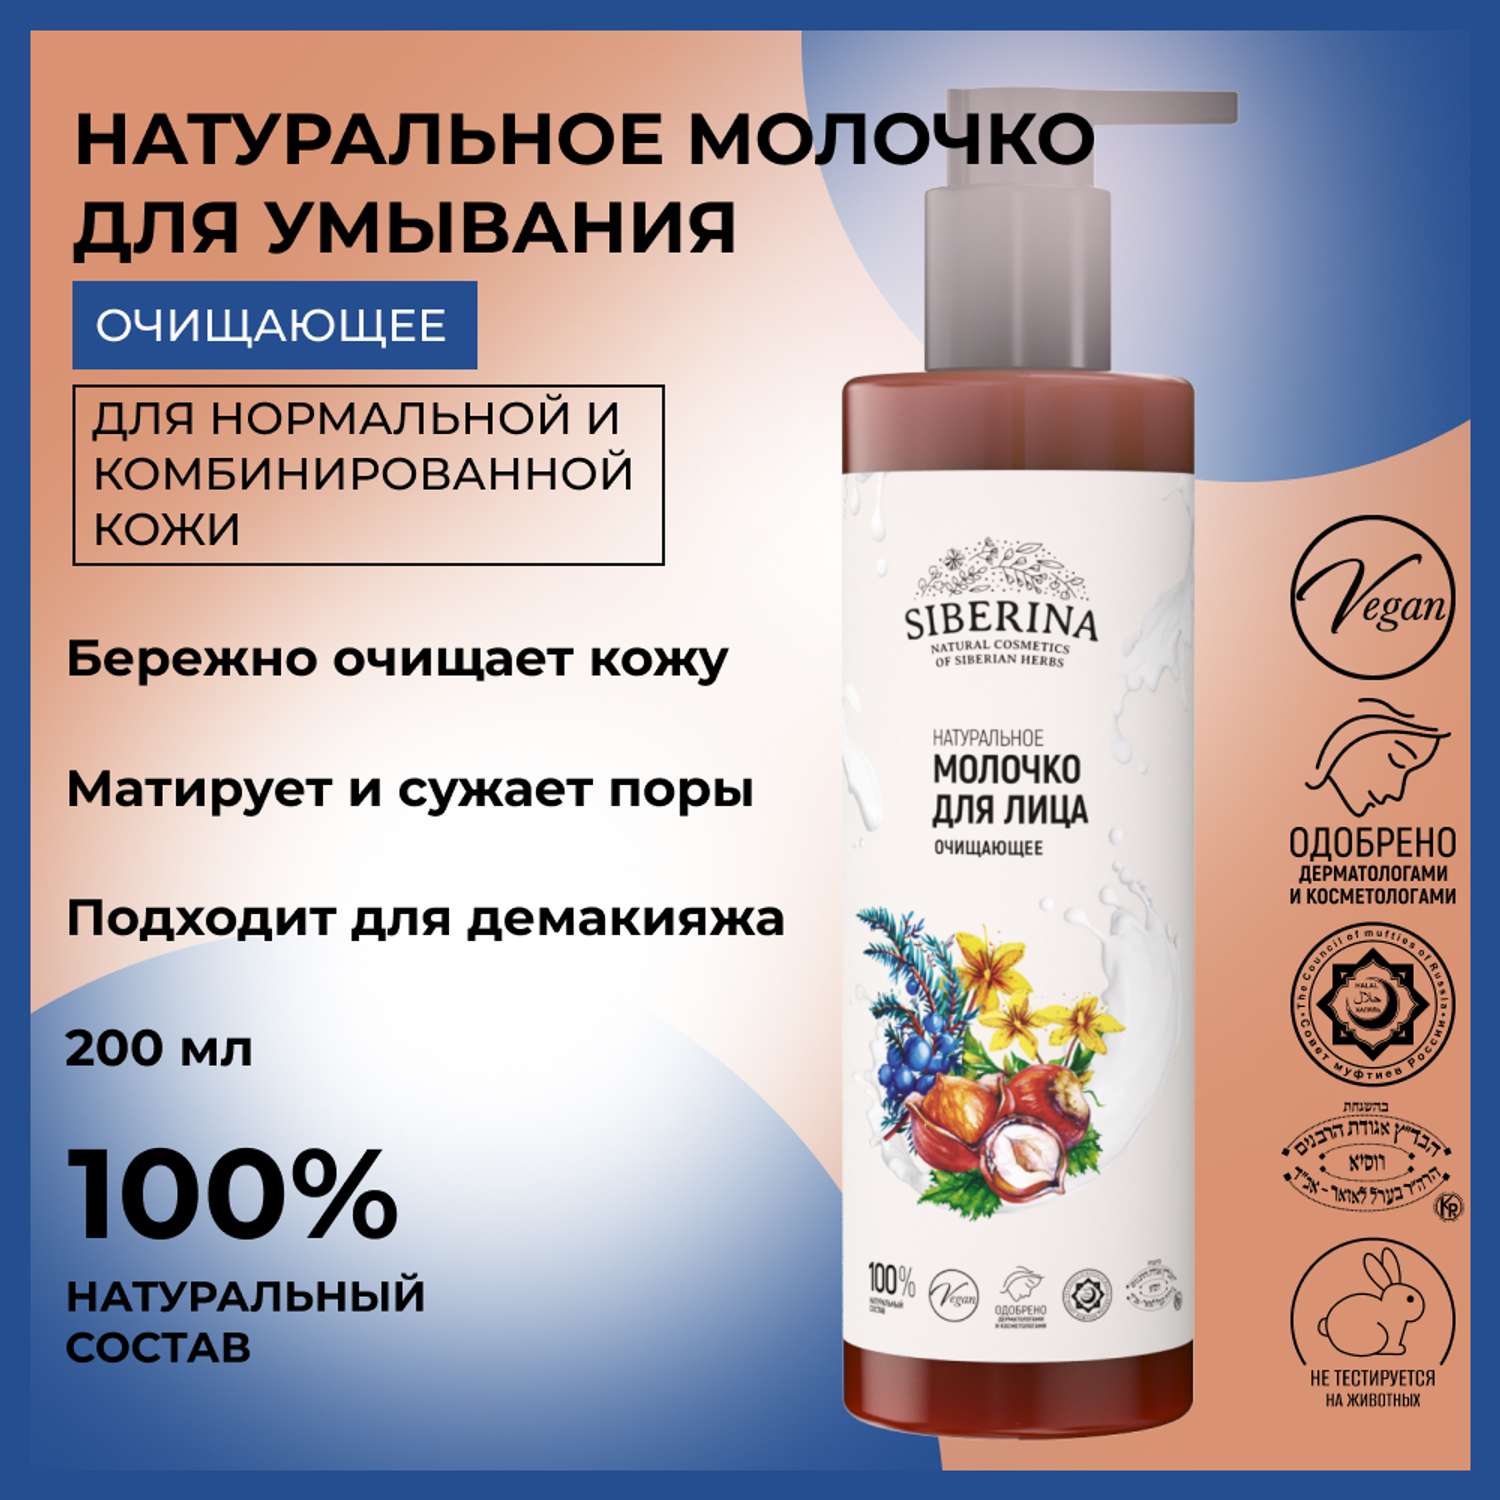 Молочко для лица Siberina натуральное «Очищающее» для комбинированной кожи 200 мл - фото 2